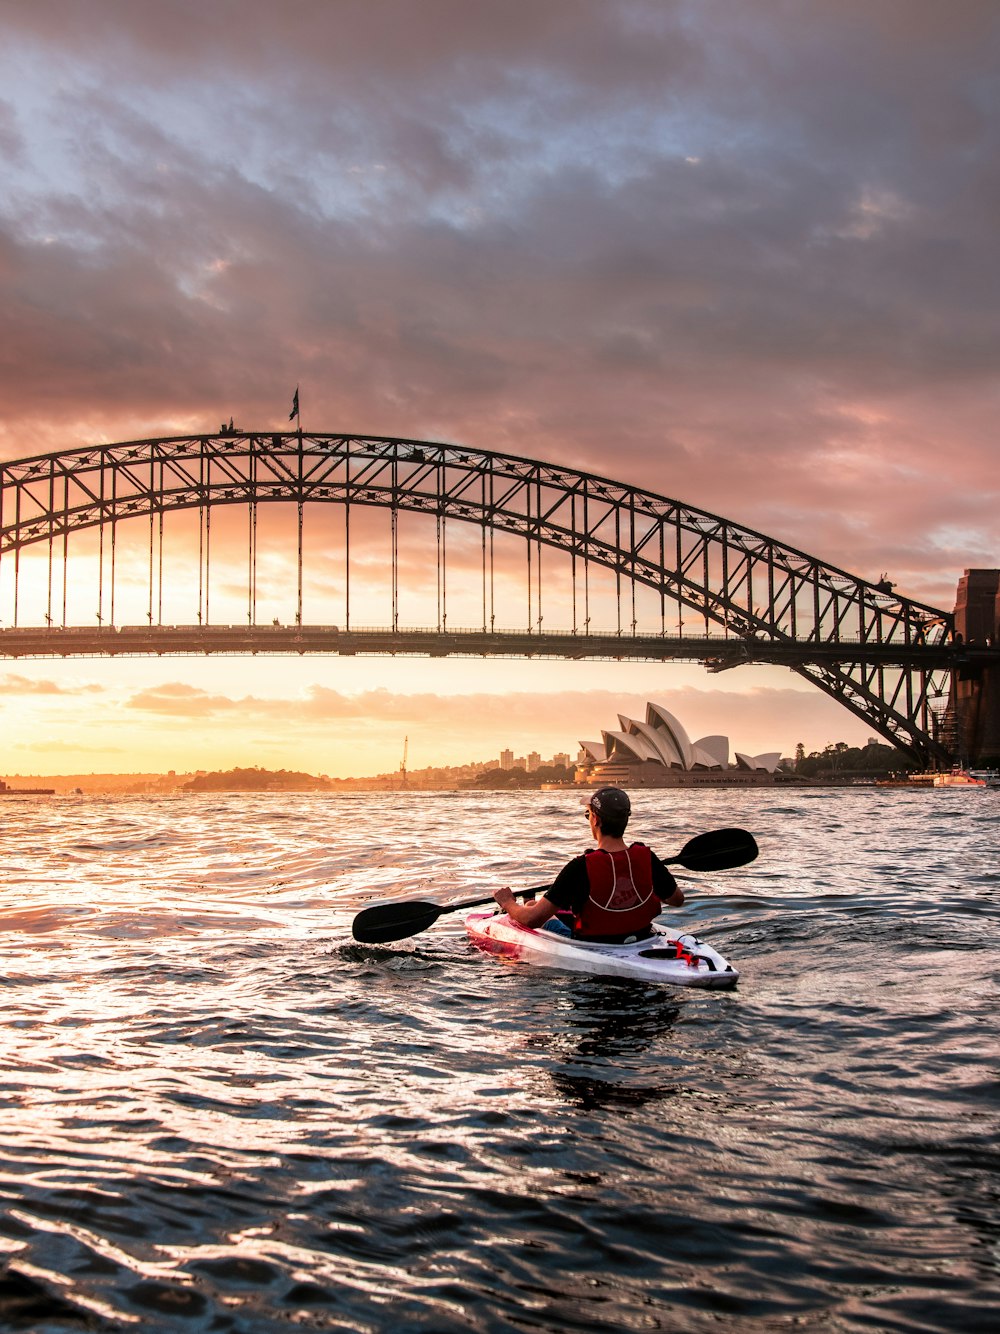 Persona montando kayak hacia el puente de metal